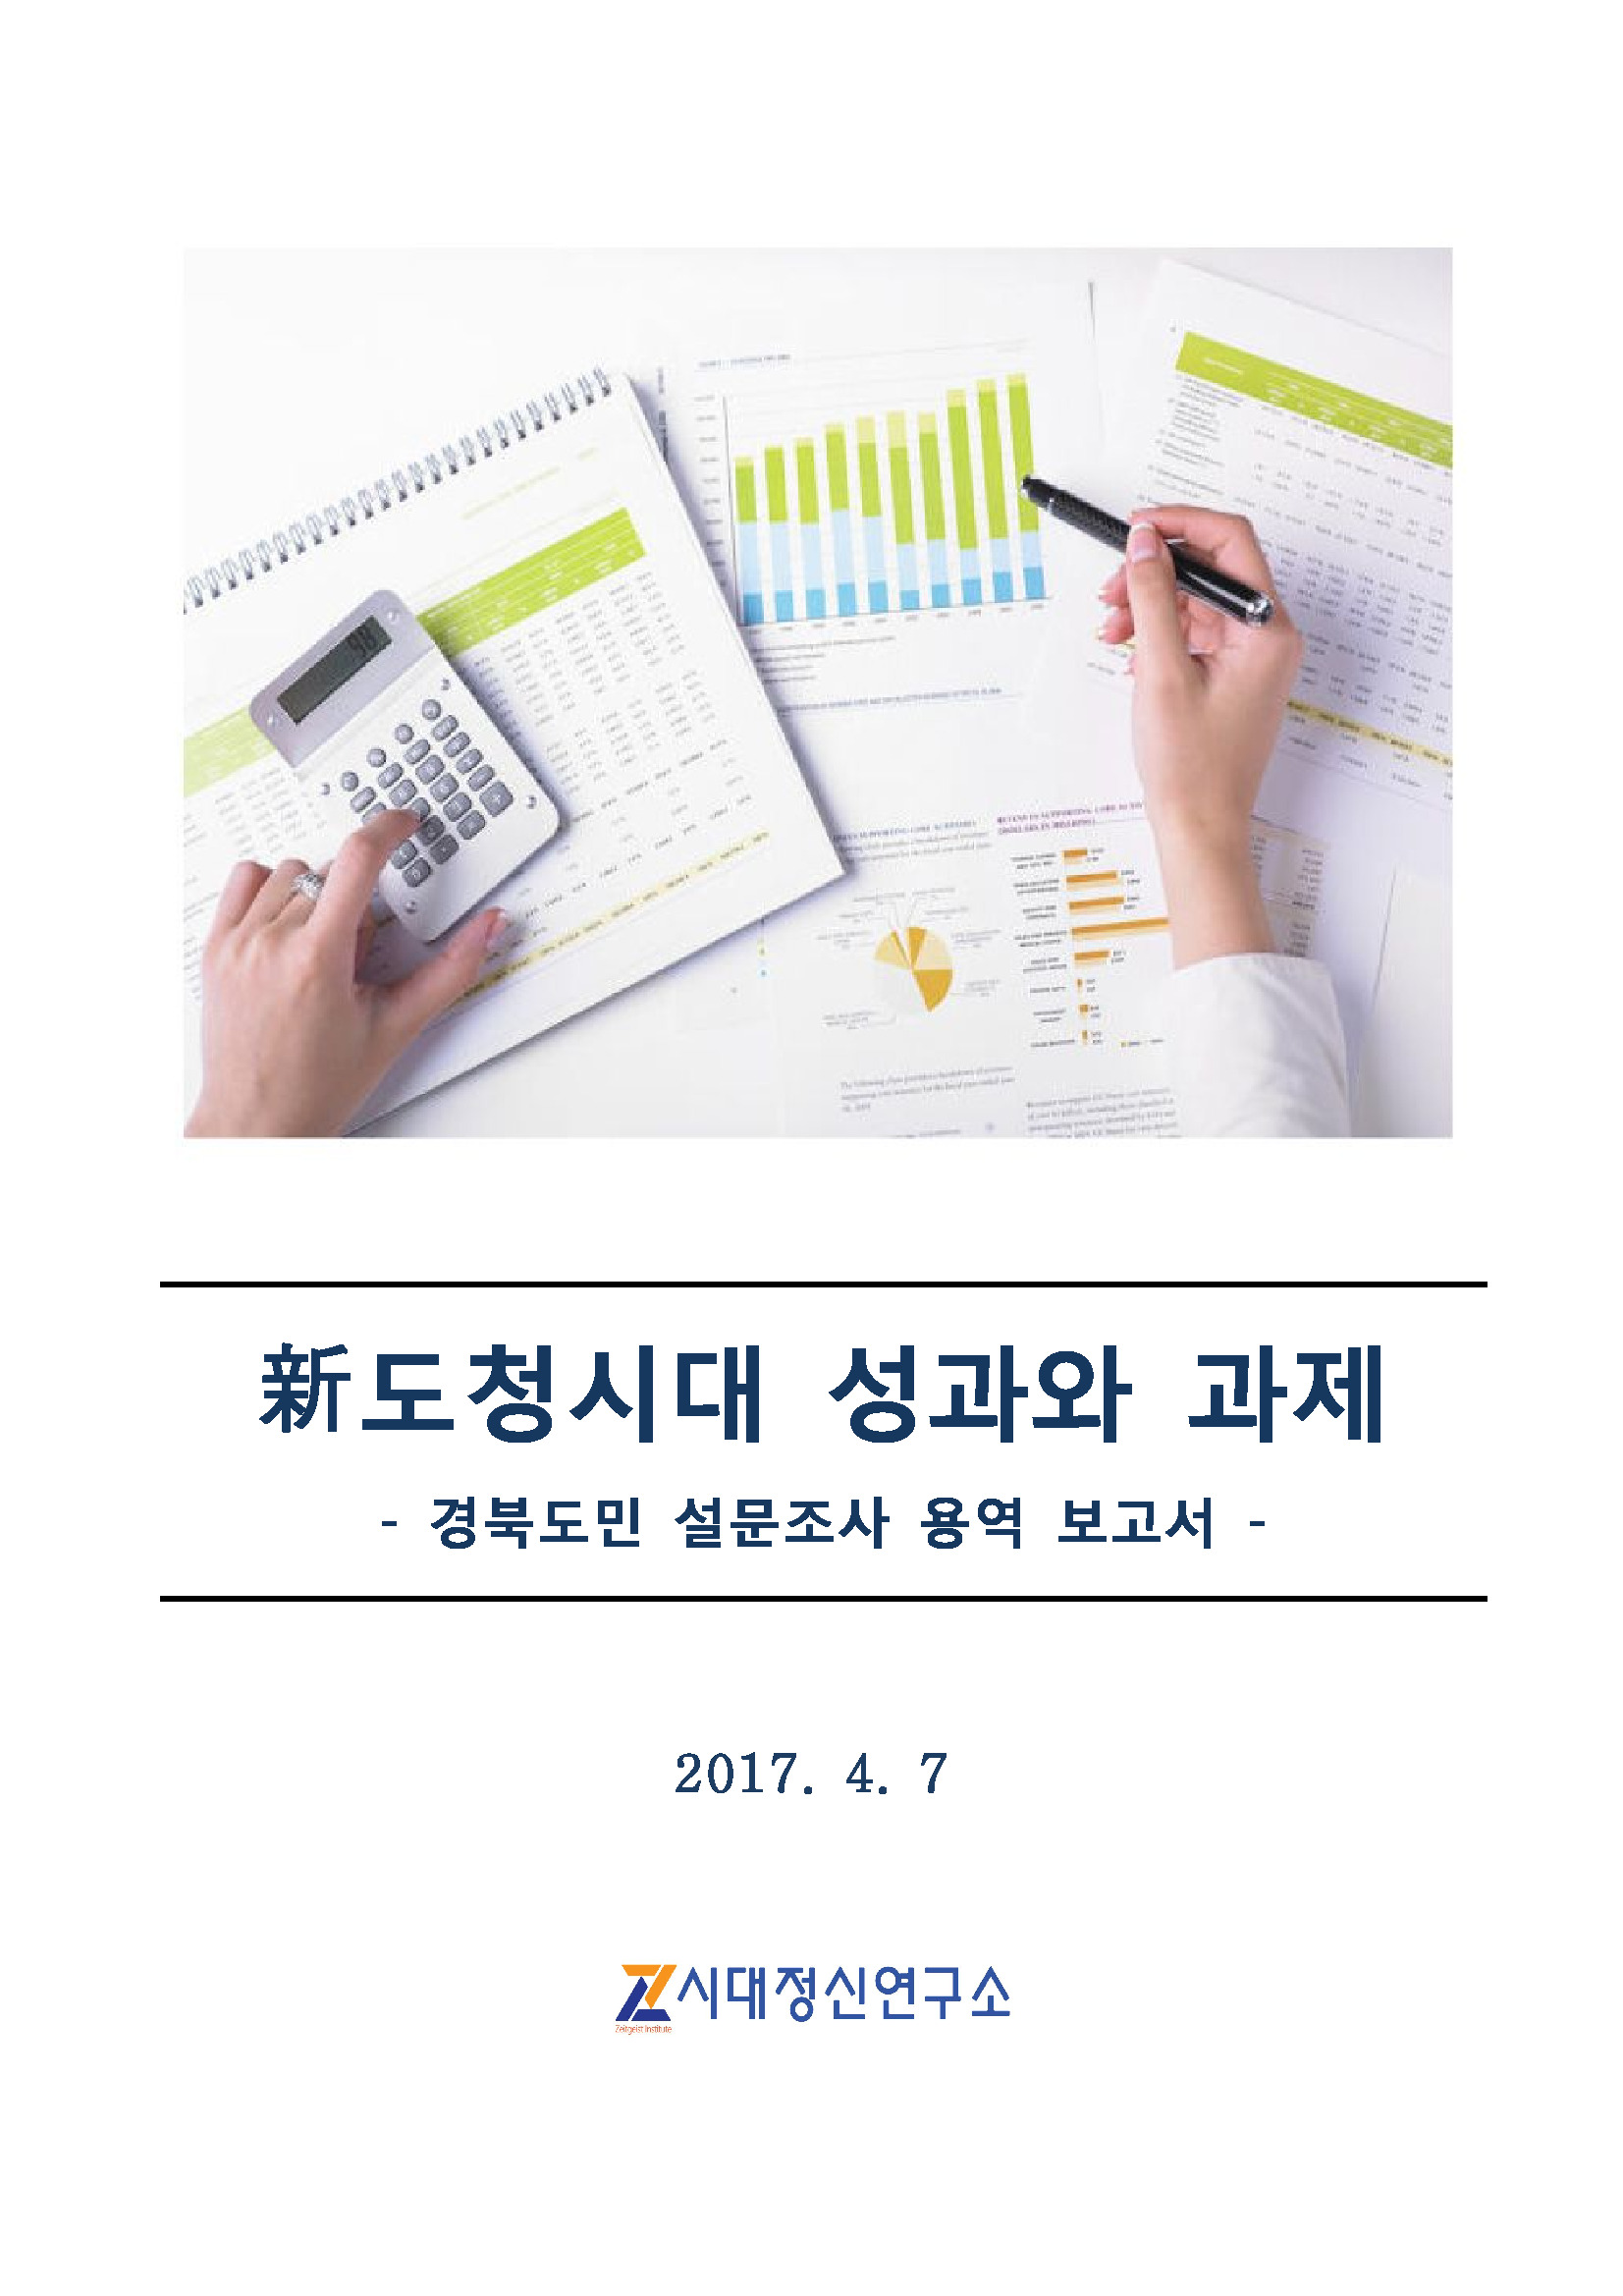 경북 신도청시대 성과와 과제 도민설문조사 용역